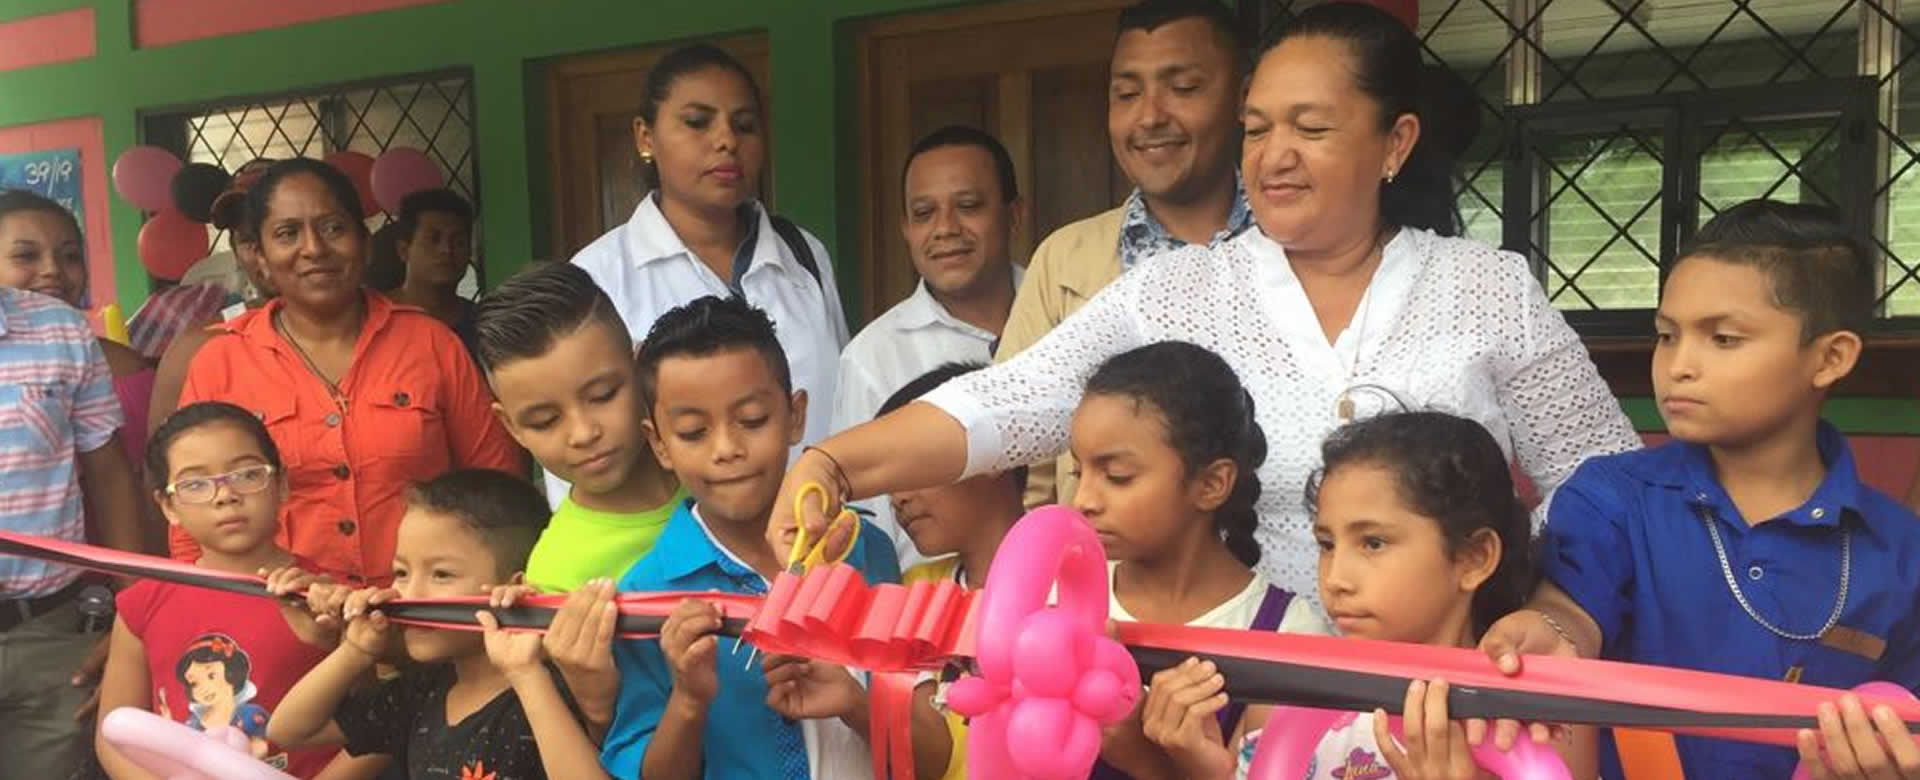 Comunidad de San Juan del Sur ya cuentan con Centro de Salud